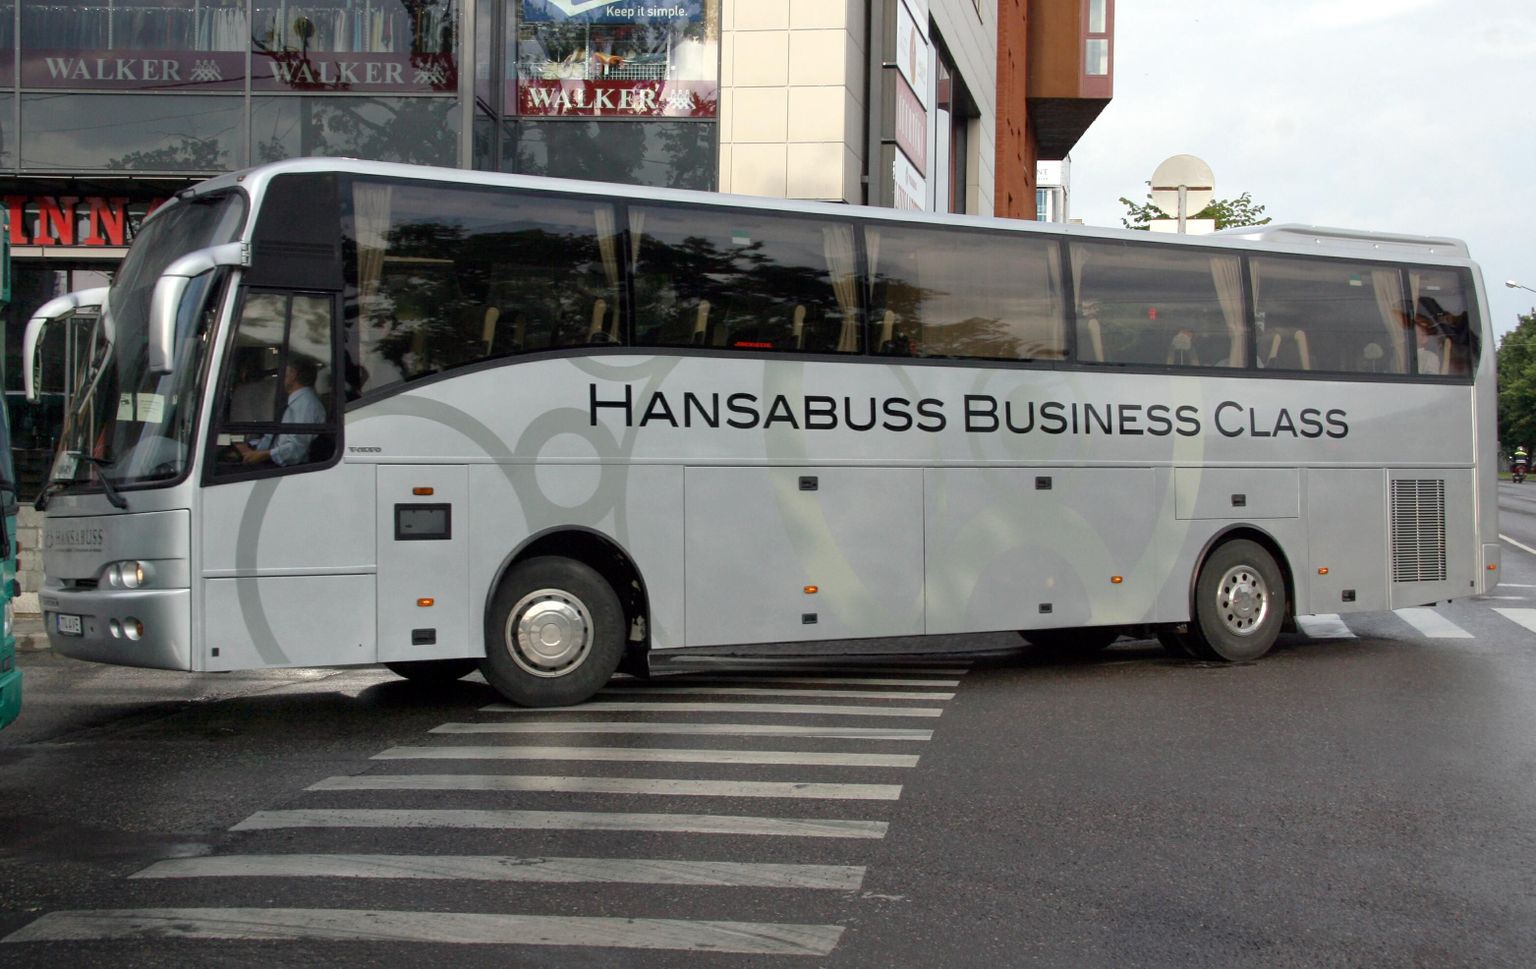 Hansabuss